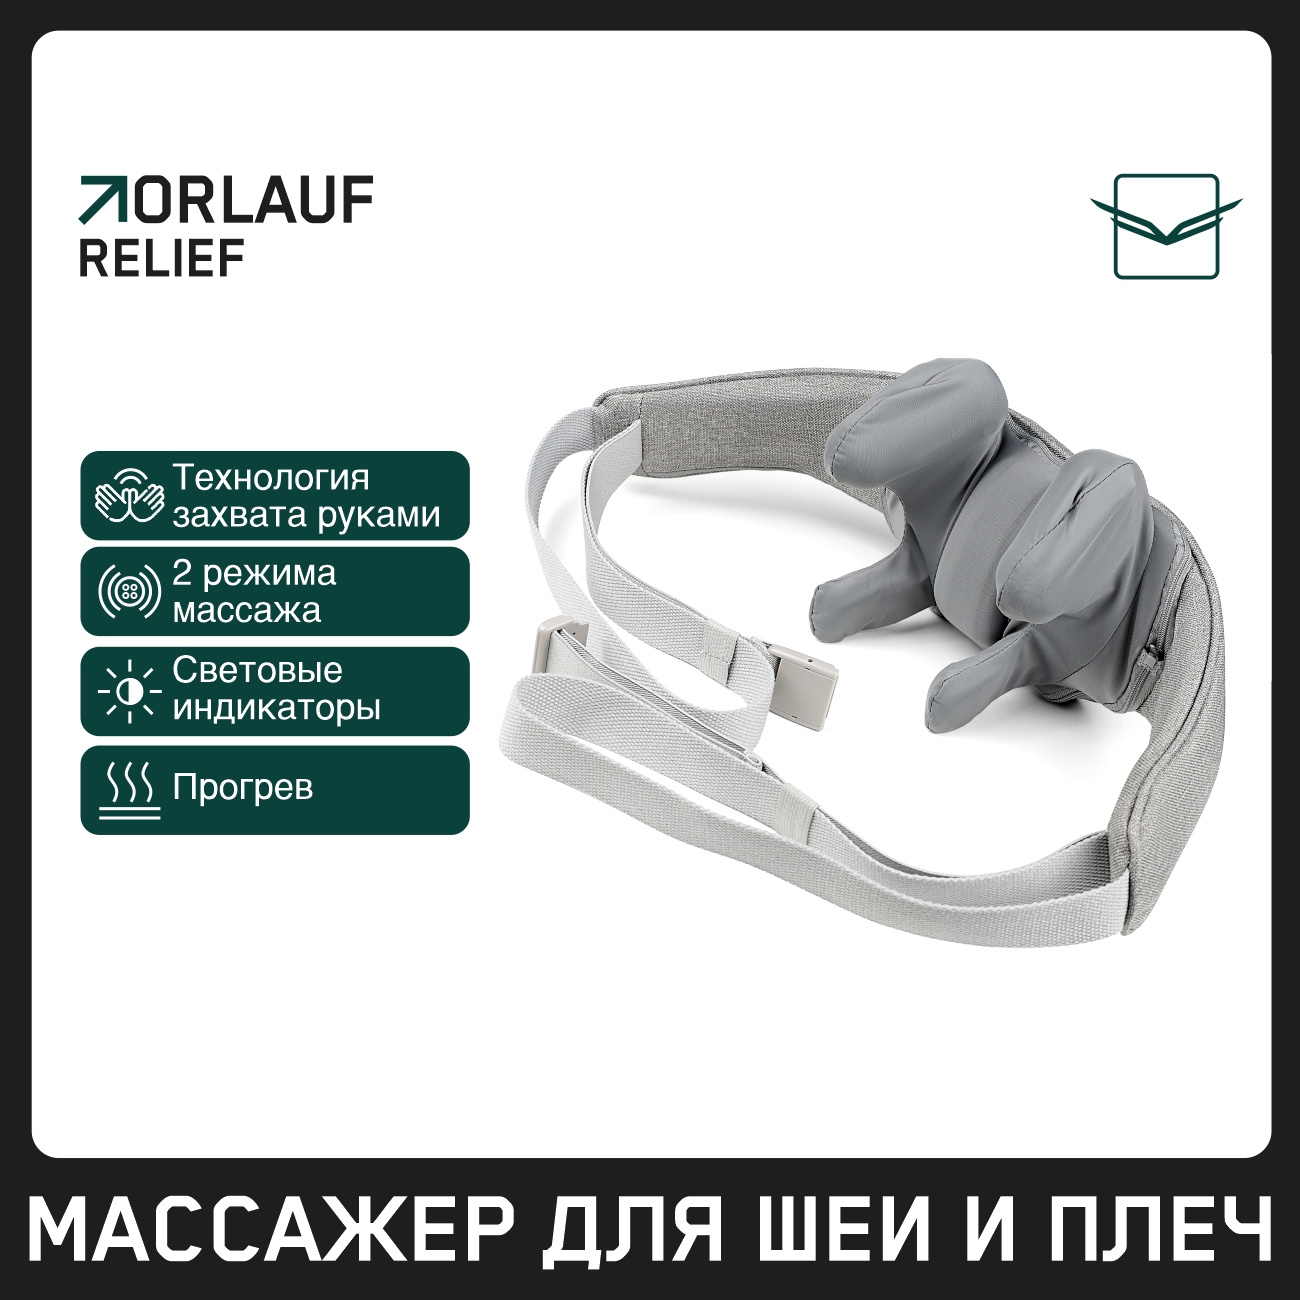 Orlauf Relief из каталога устройств для массажа в Тольятти по цене 9900 ₽